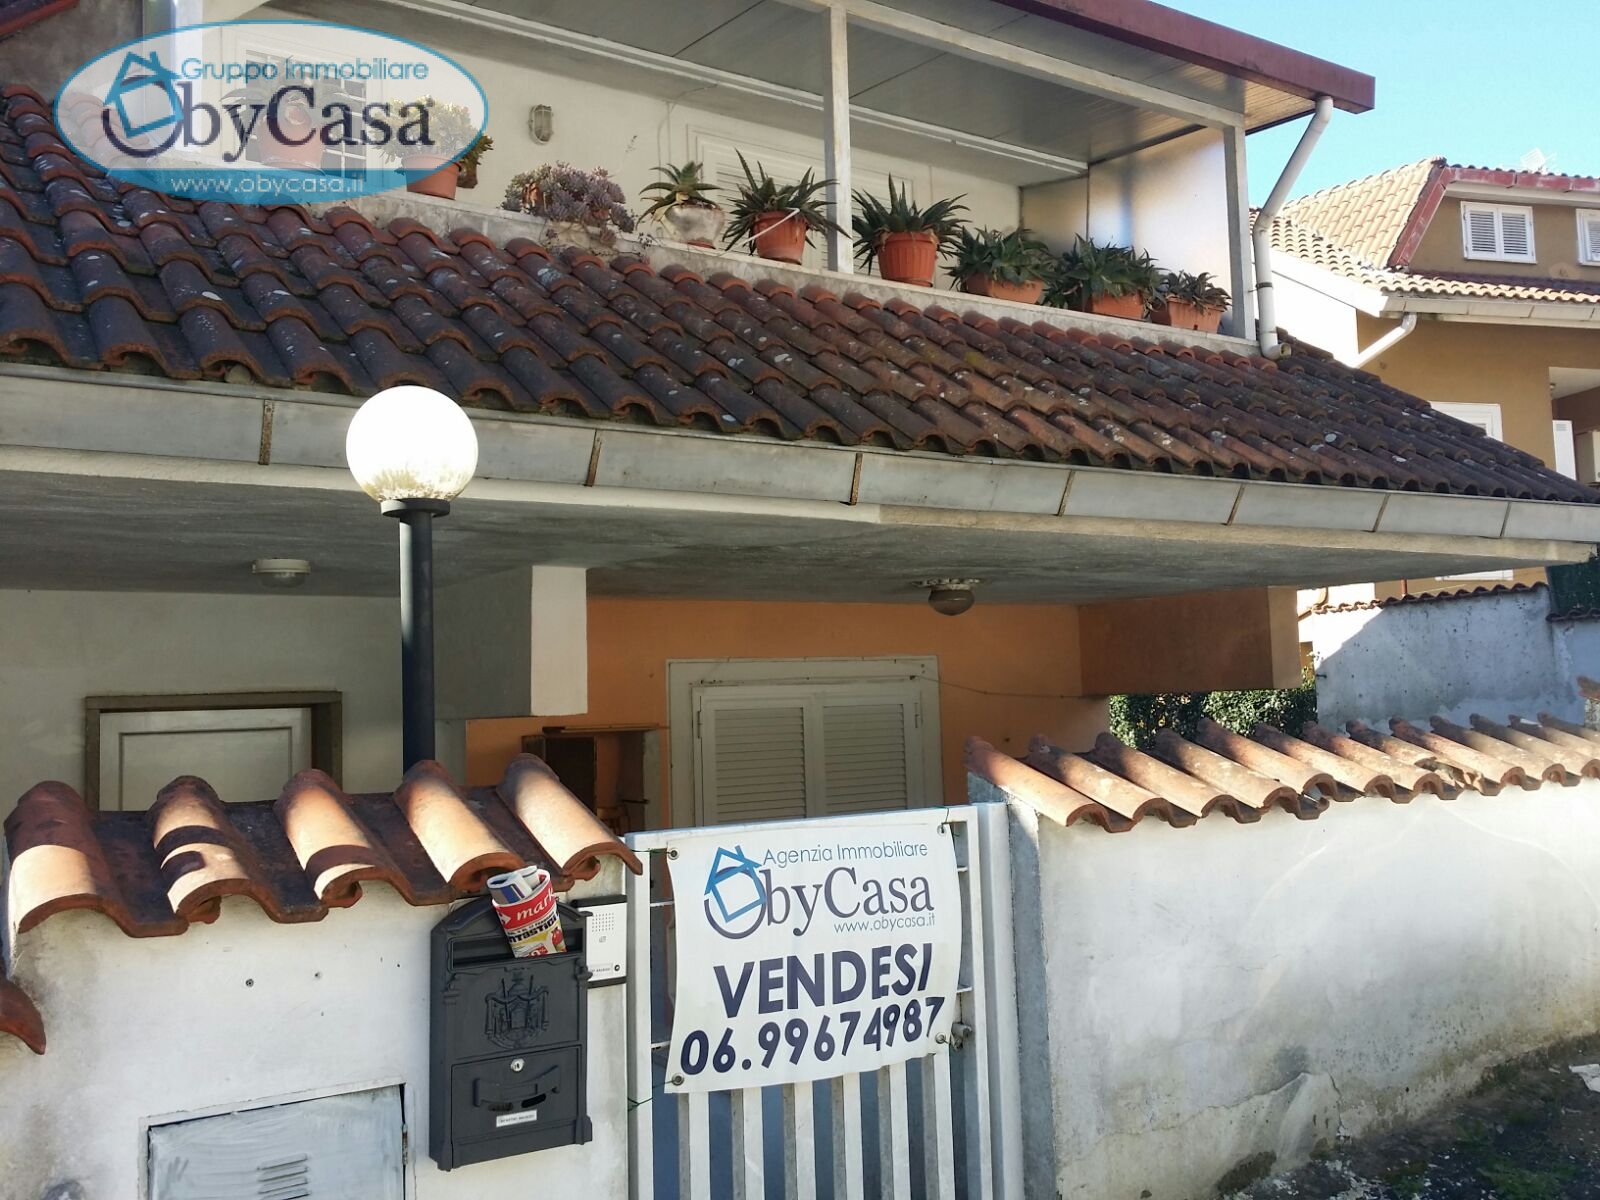 Villa a Schiera in vendita a Manziana, 2 locali, zona Località: verdebosco, prezzo € 66.000 | PortaleAgenzieImmobiliari.it